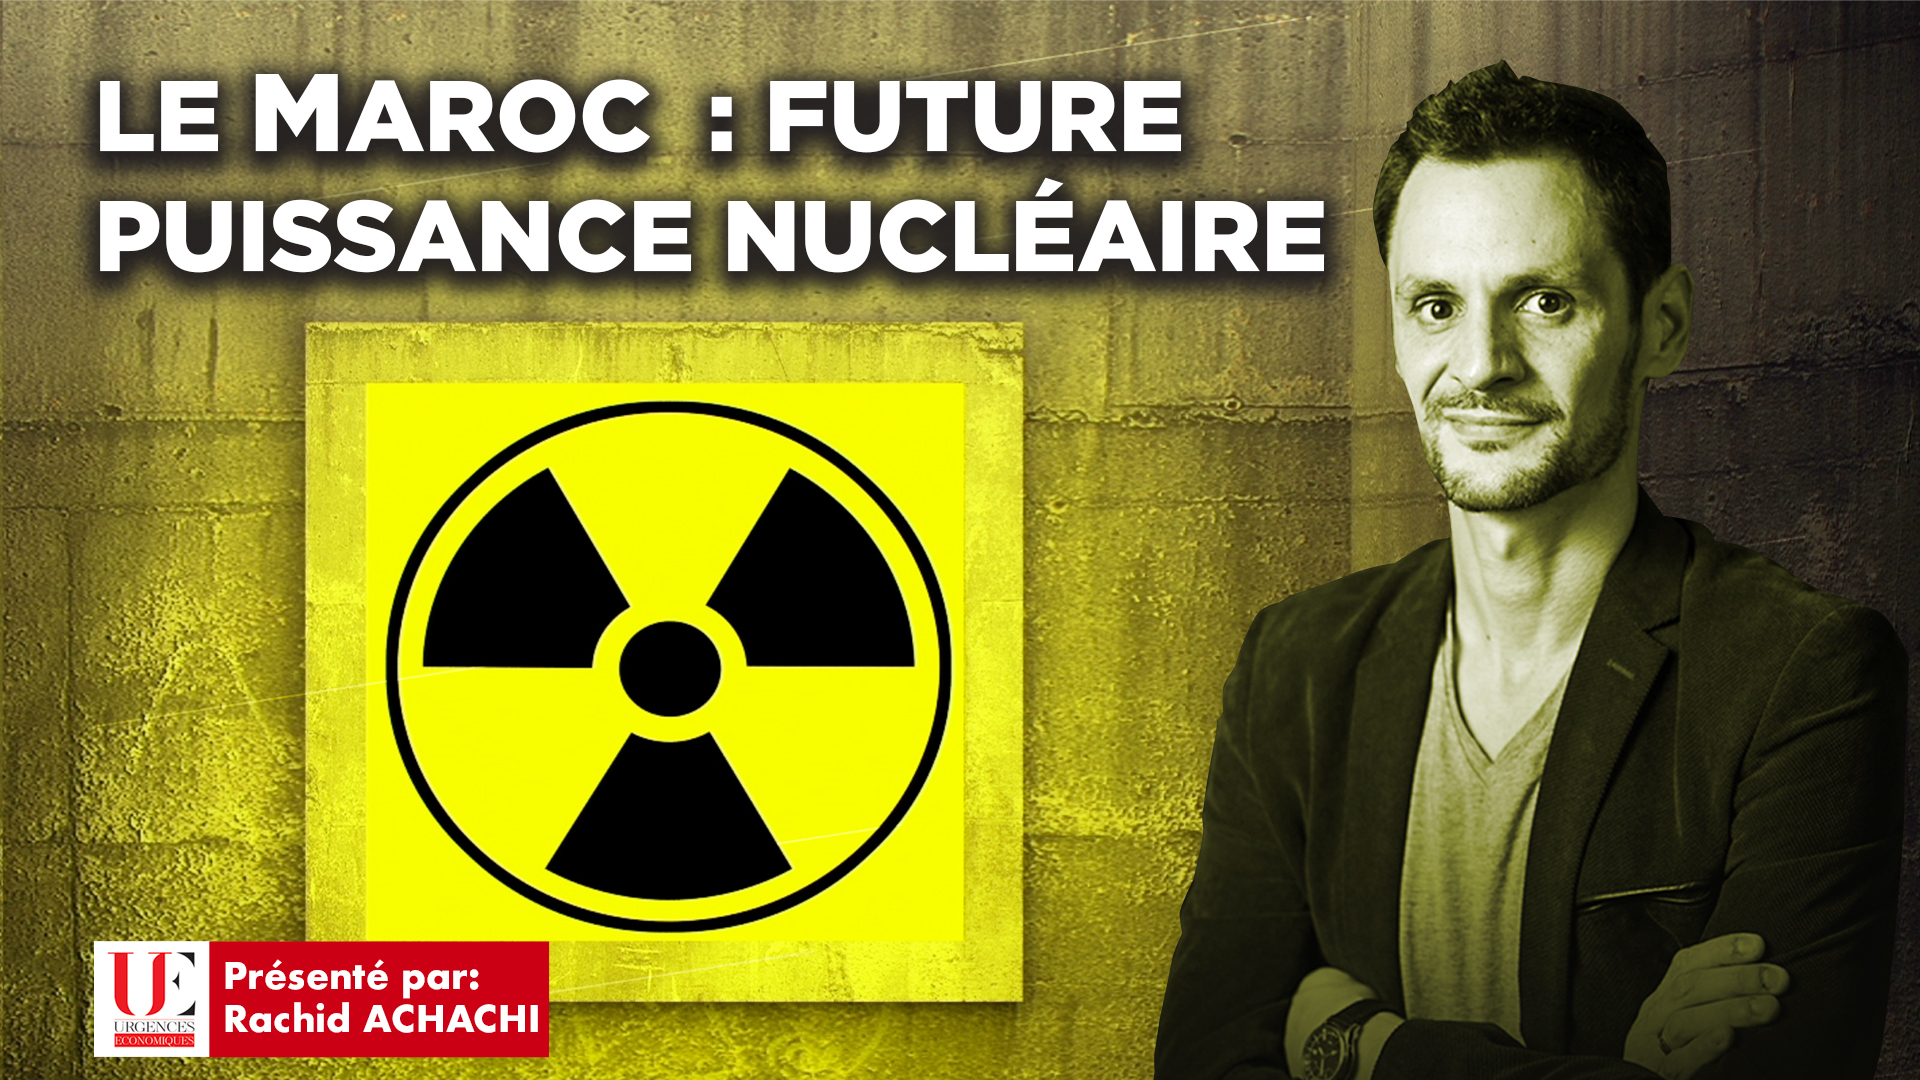 Le Maroc: Future puissance nucléaire (VIDEO)